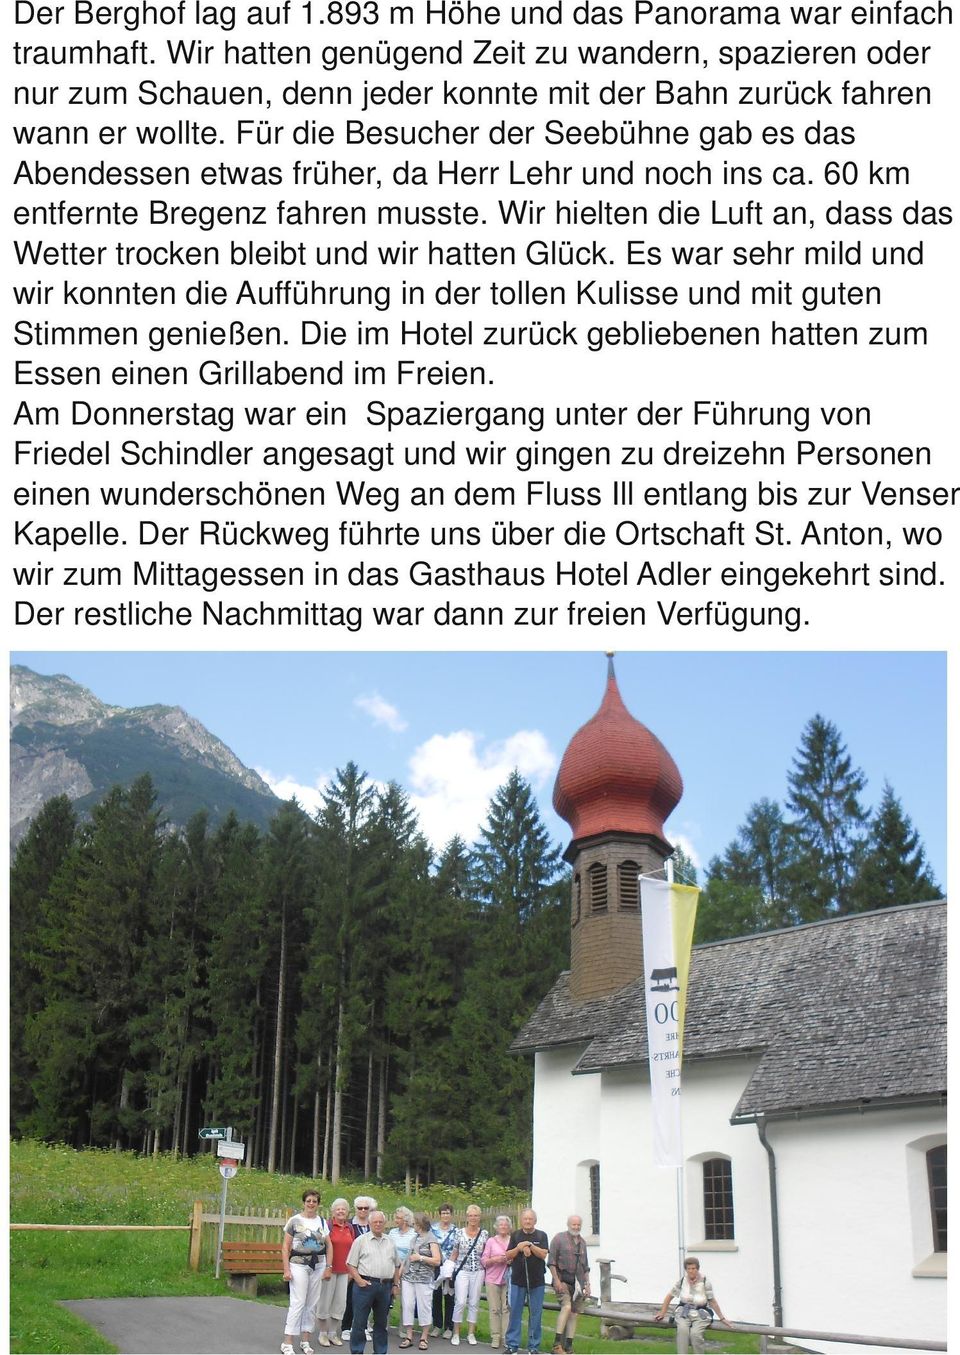 Für die Besucher der Seebühne gab es das Abendessen etwas früher, da Herr Lehr und noch ins ca. 60 km entfernte Bregenz fahren musste.